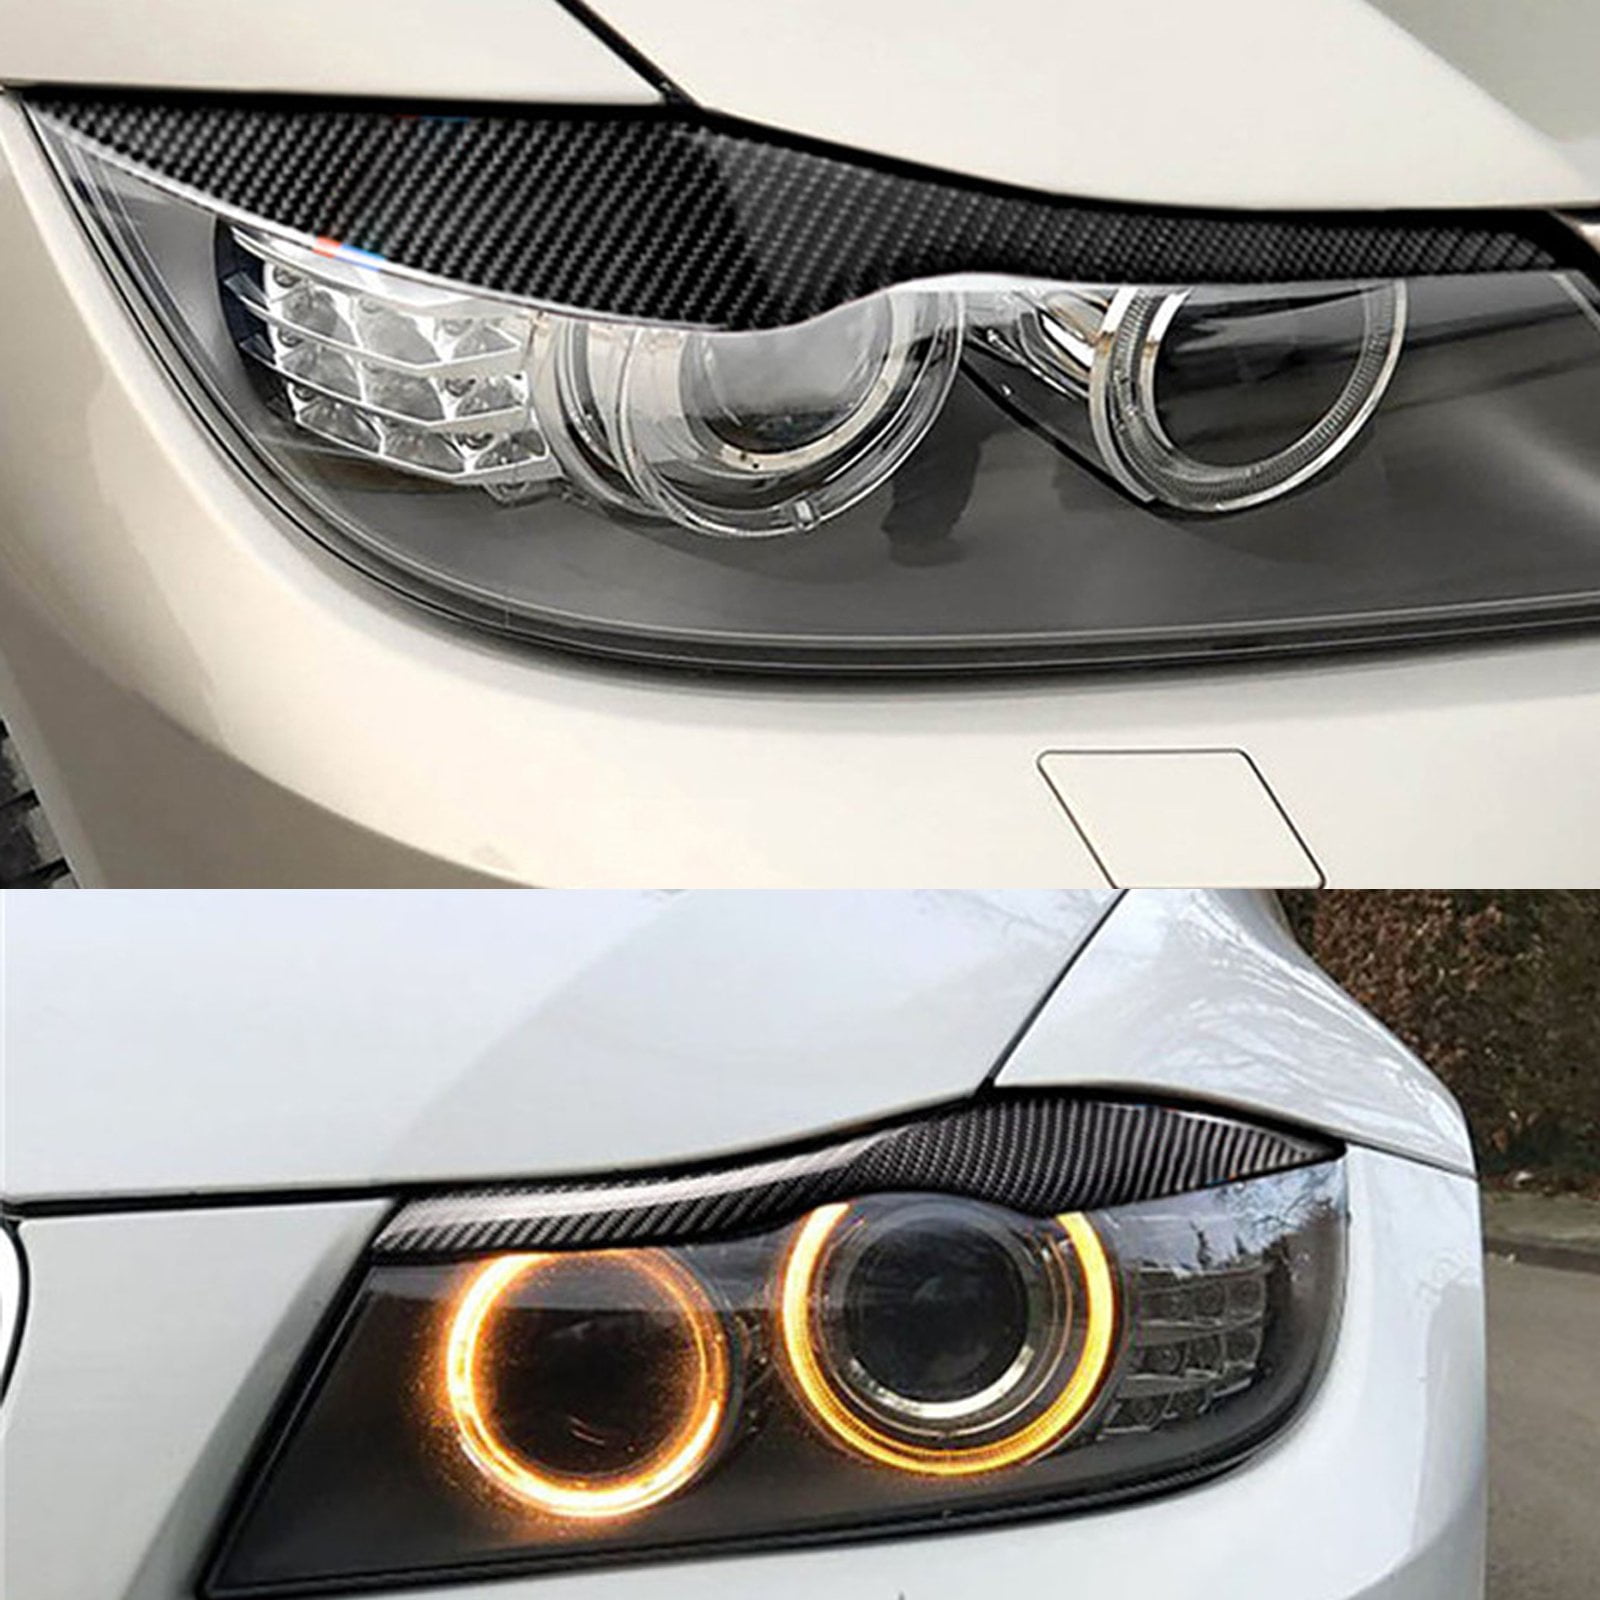 Xotic Tech Carbon Fiber Headlight Eyebrow Eyelid Overlay Trim Decal Cover for BMW E90 E91 318i 320i 325i 2006-2012 